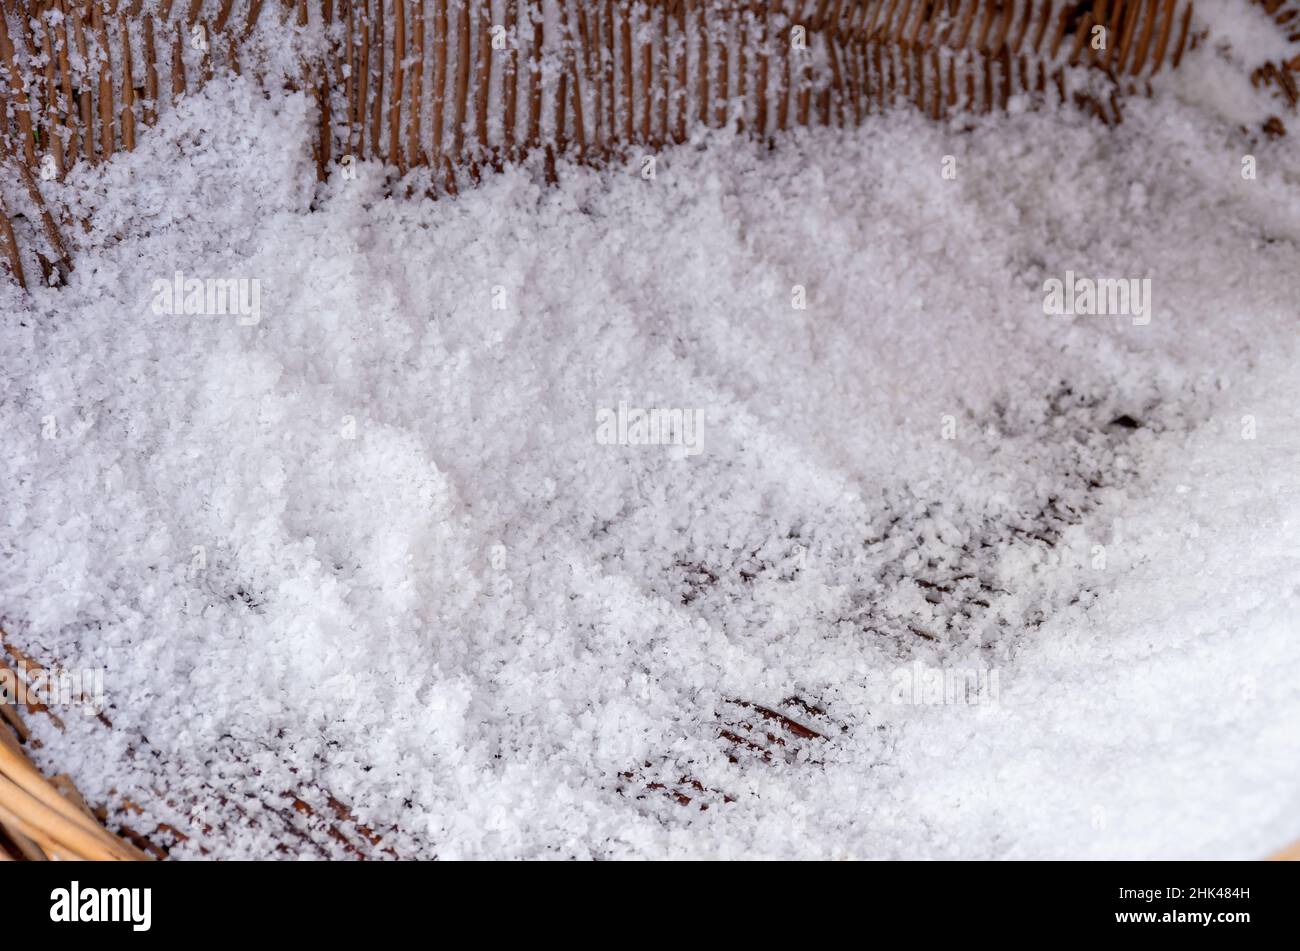 Frisches Salz oder Natriumchlorid, am Beispiel eines traditionell handgefertigten Salzes aus Salzlake. Stockfoto